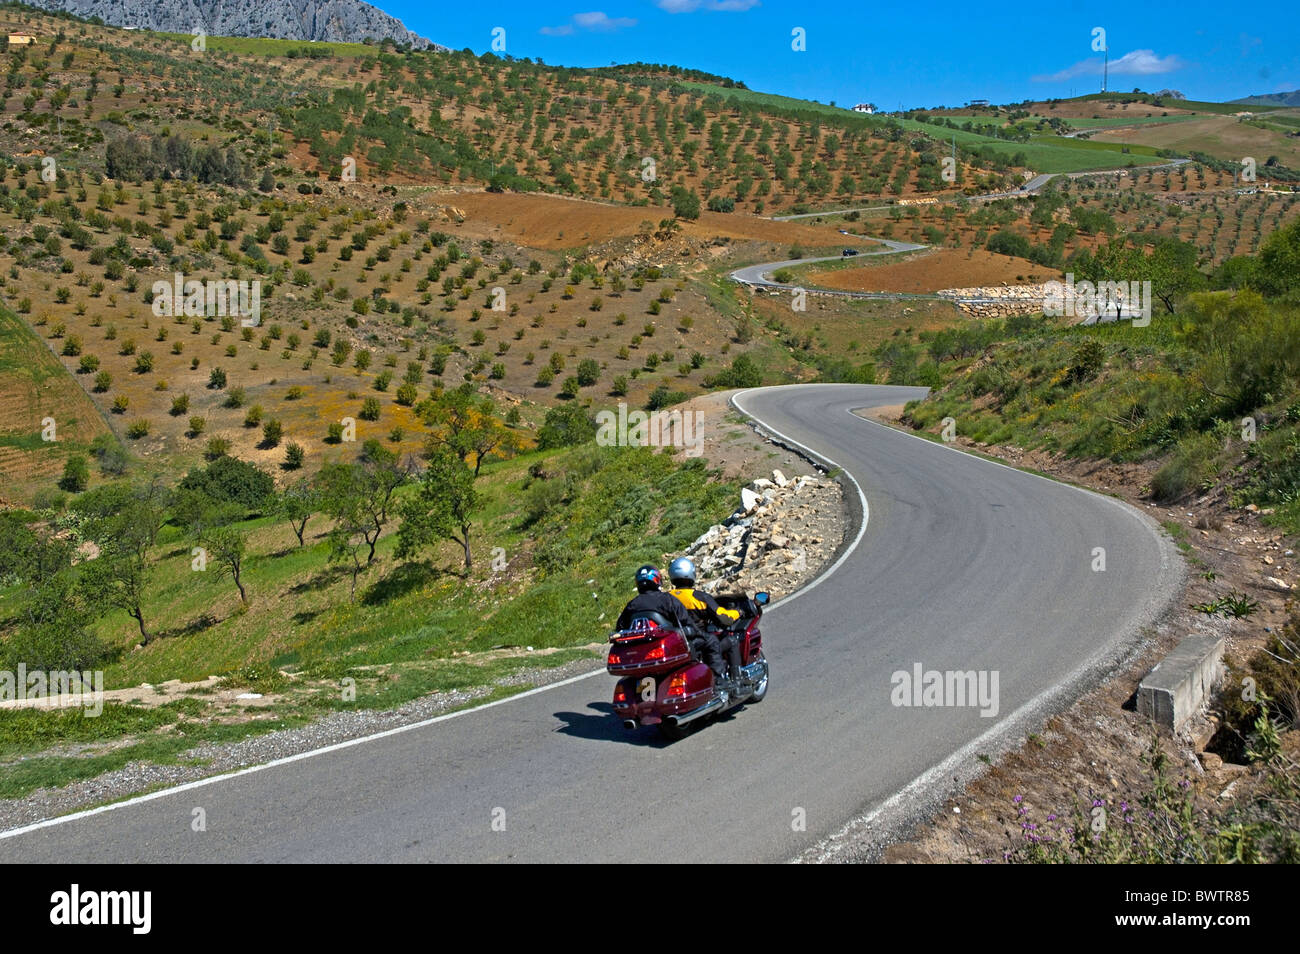 In Andalusia, Spagna - il motociclismo attraverso il paesaggio rurale pieno di ulivi tra Alora e Antequera, Andalusia, Spagna. Foto Stock